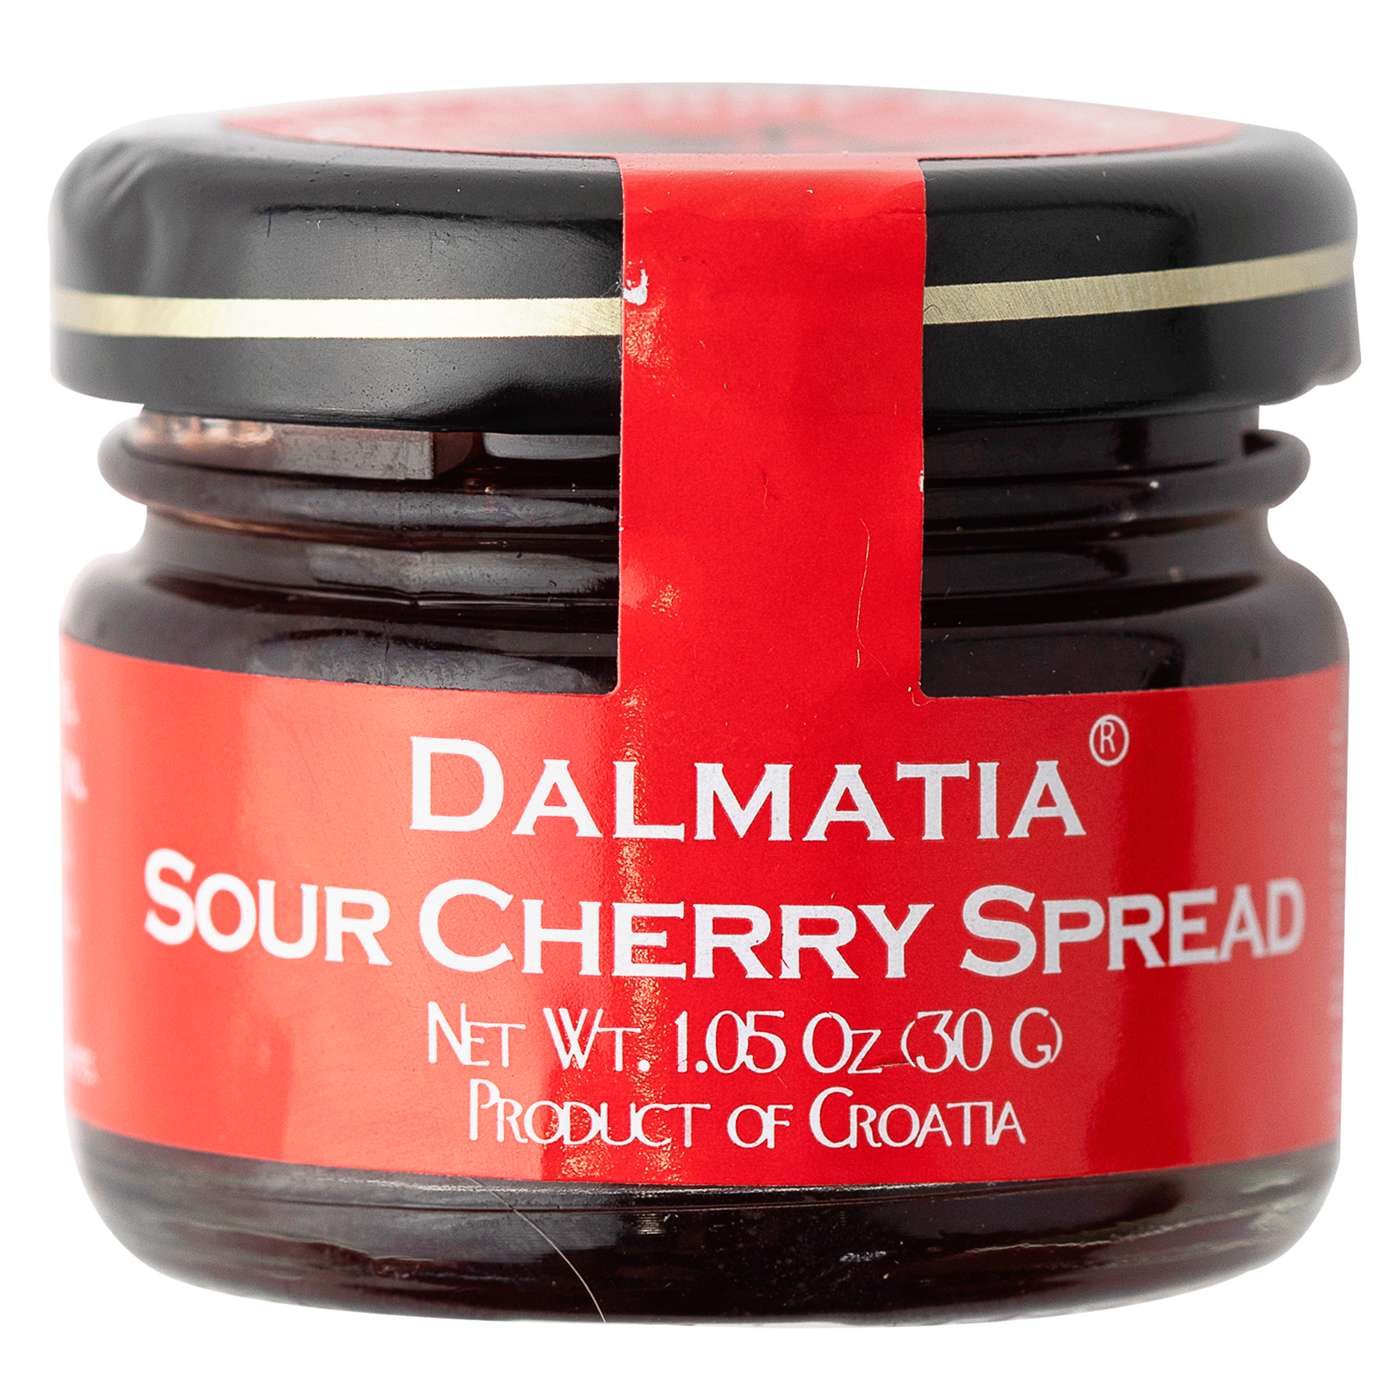 Dalmatia Sour Cherry Spread; image 1 of 2